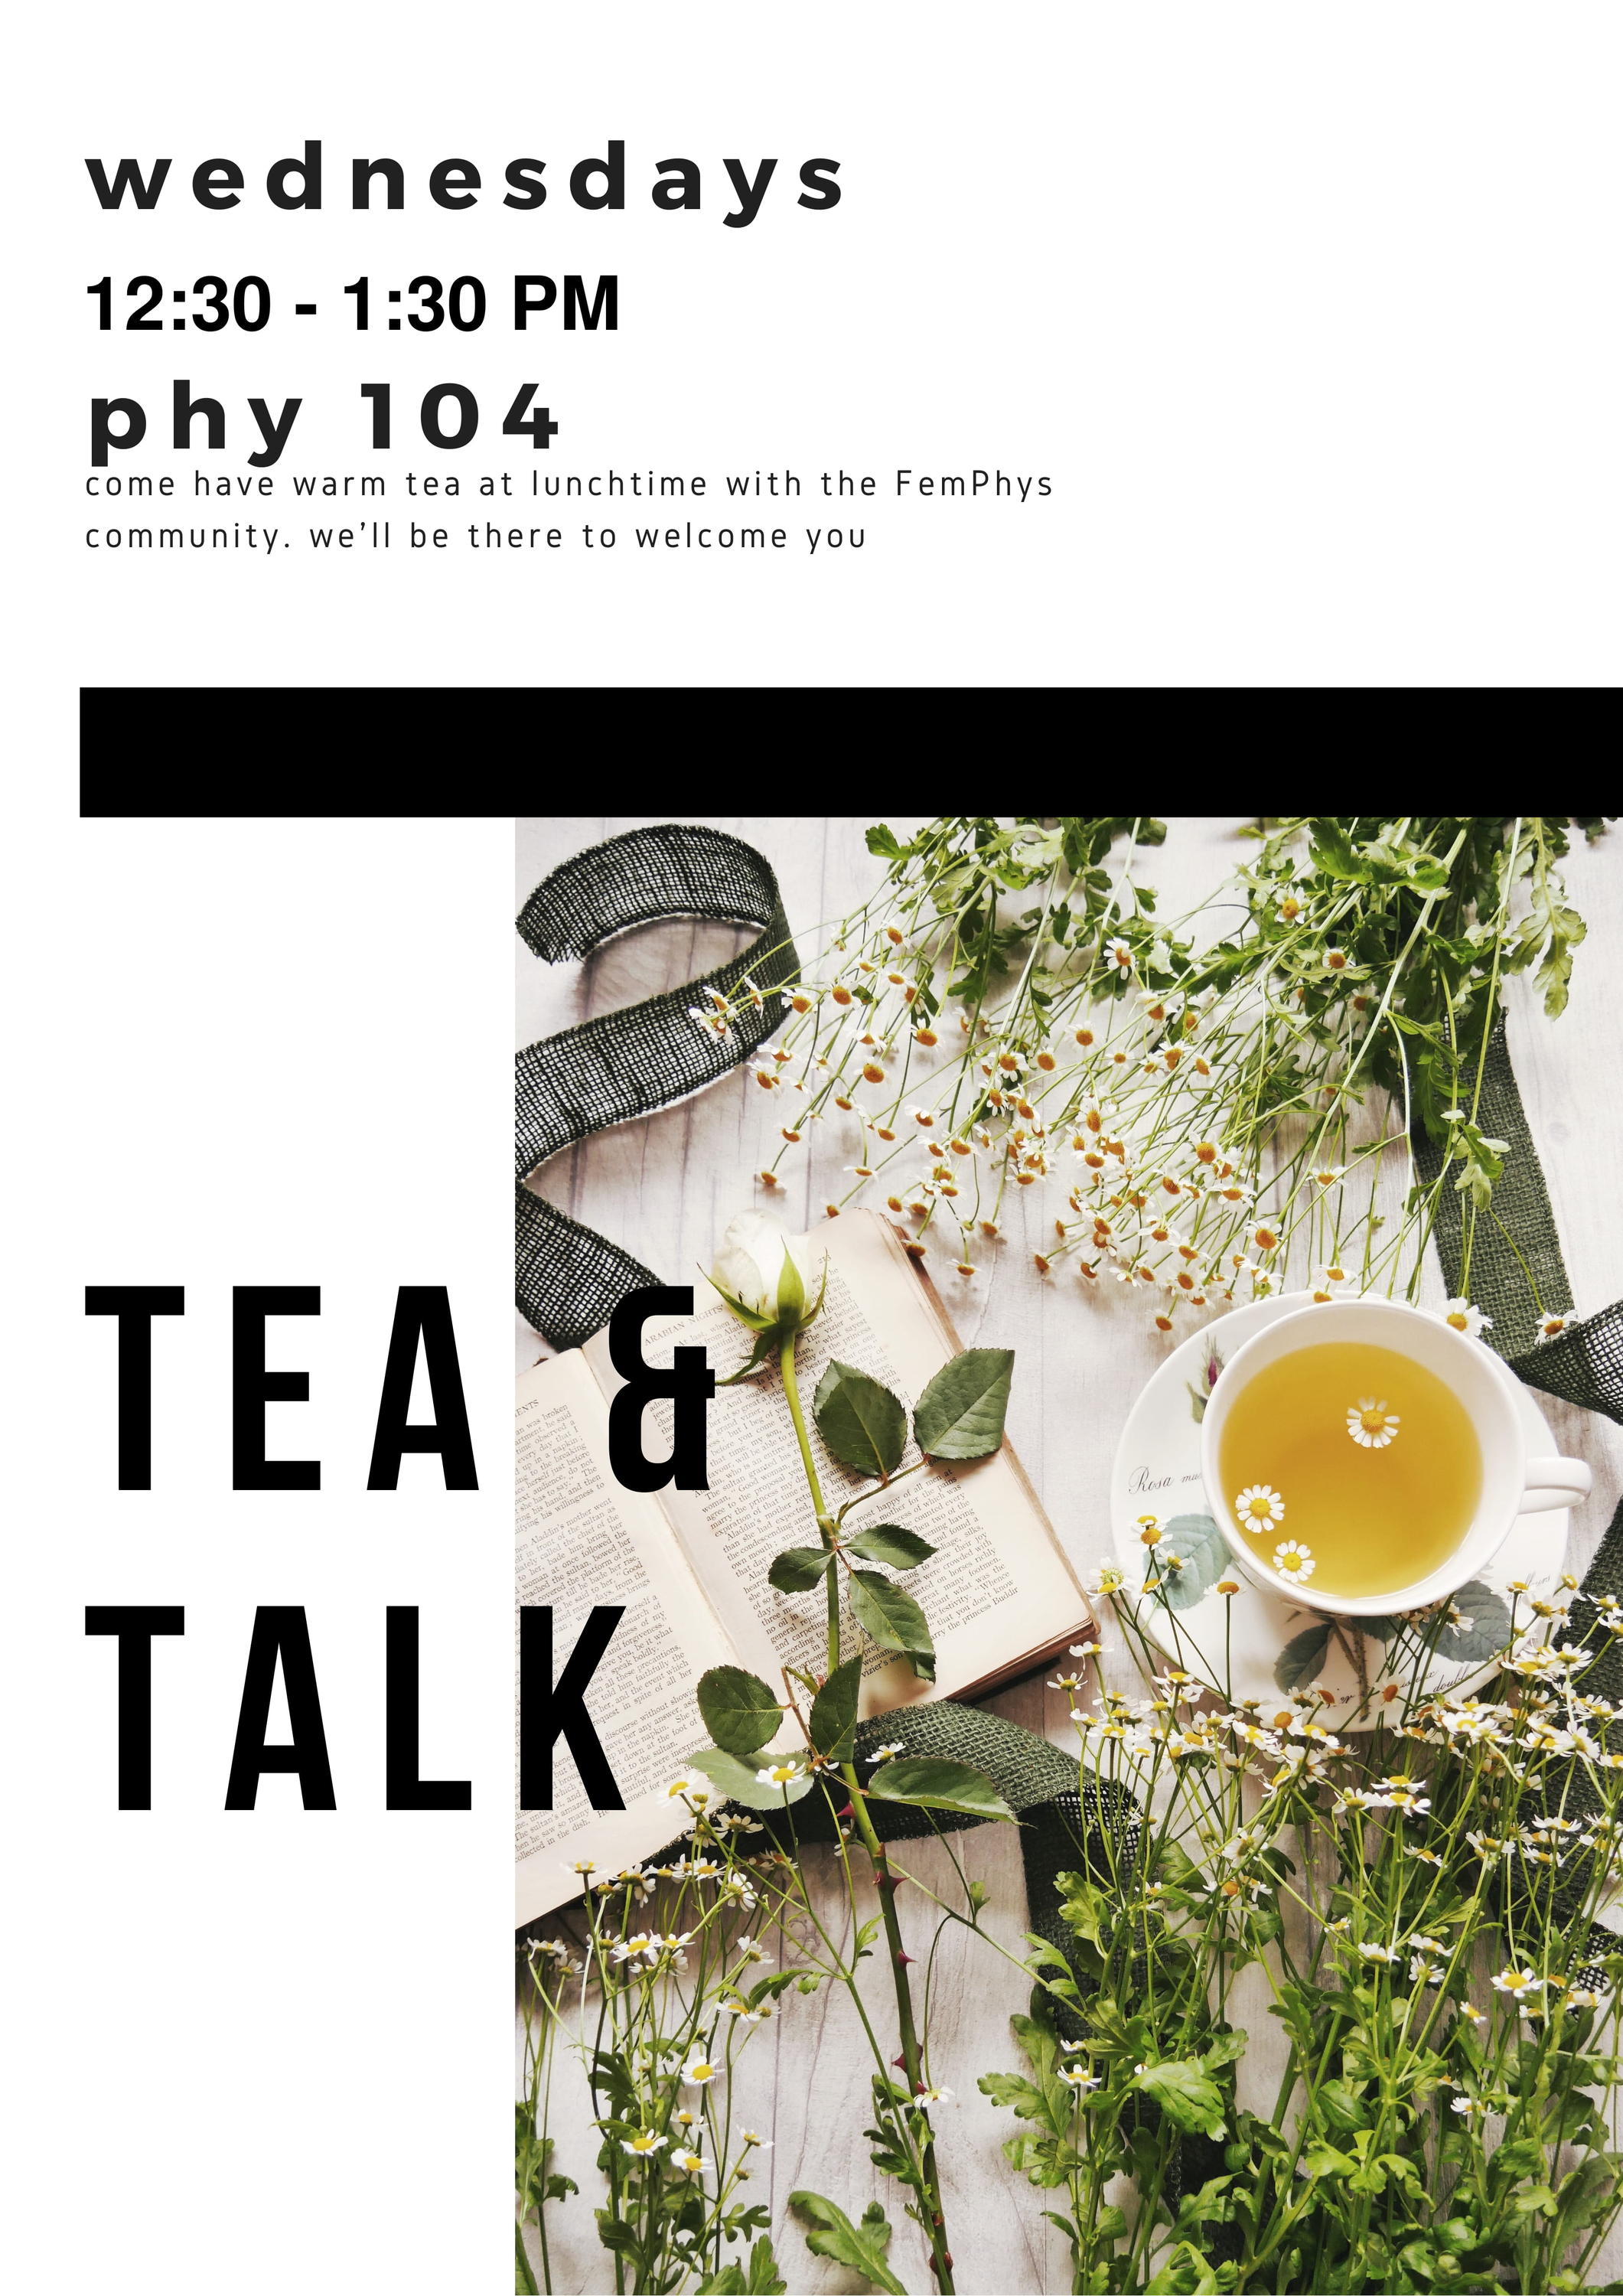 FemPhys Tea & Talk Wednesdays 12:30-1:30 pm Phys 104